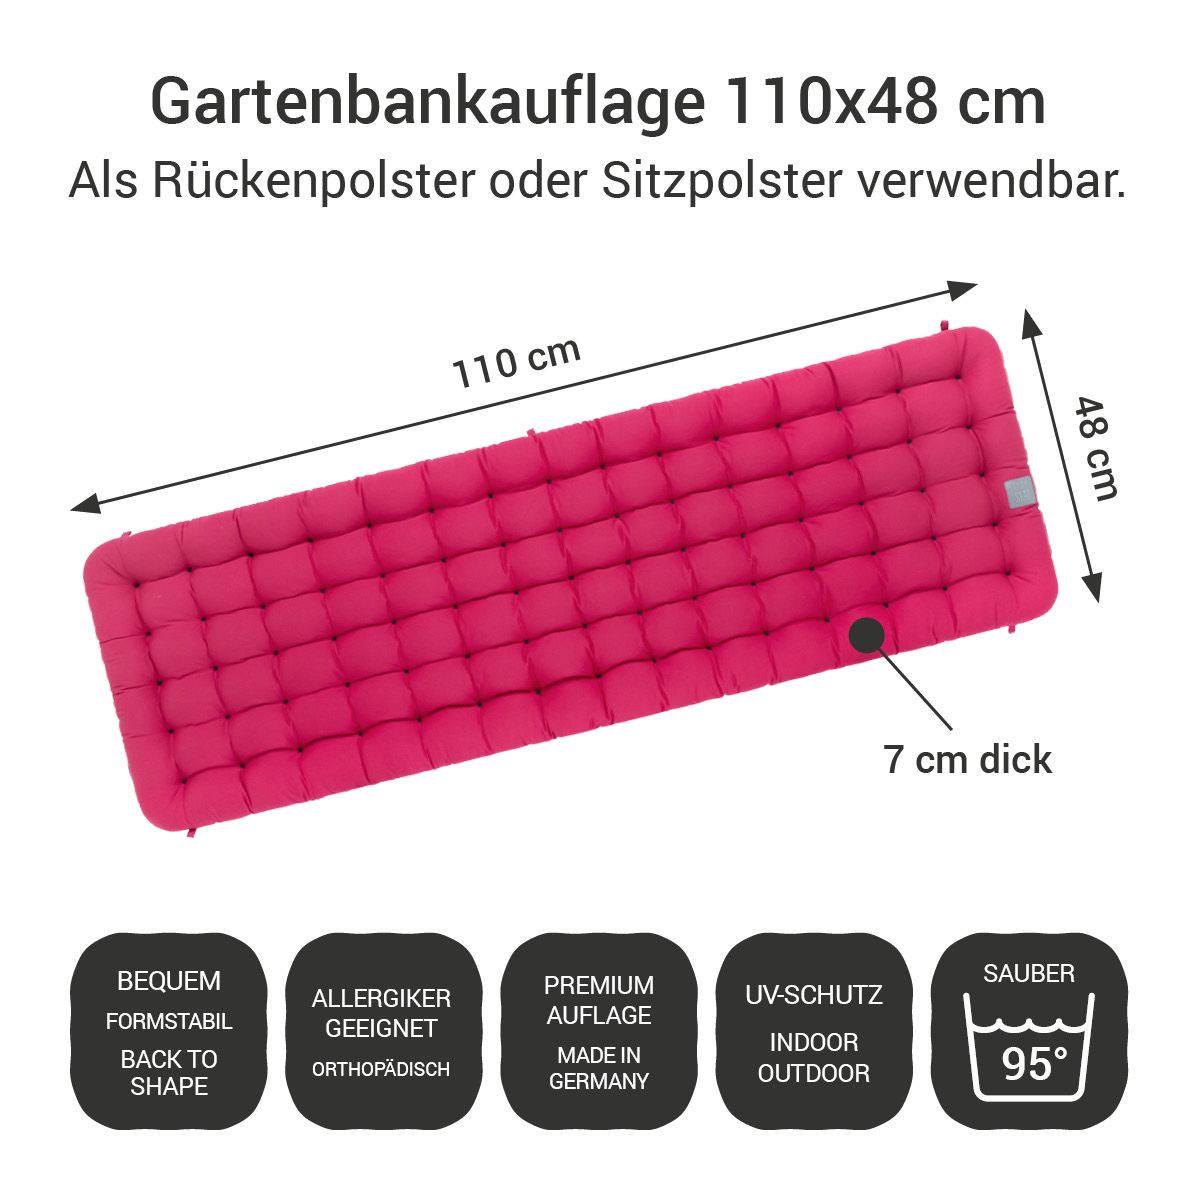 Gartenbankauflage hot pink | 110x48 cm / 110 x 50 cm | bequem & orthopädisch, komplett im Ganzen waschbar bis 95°C, wetterfest, Made in Germany